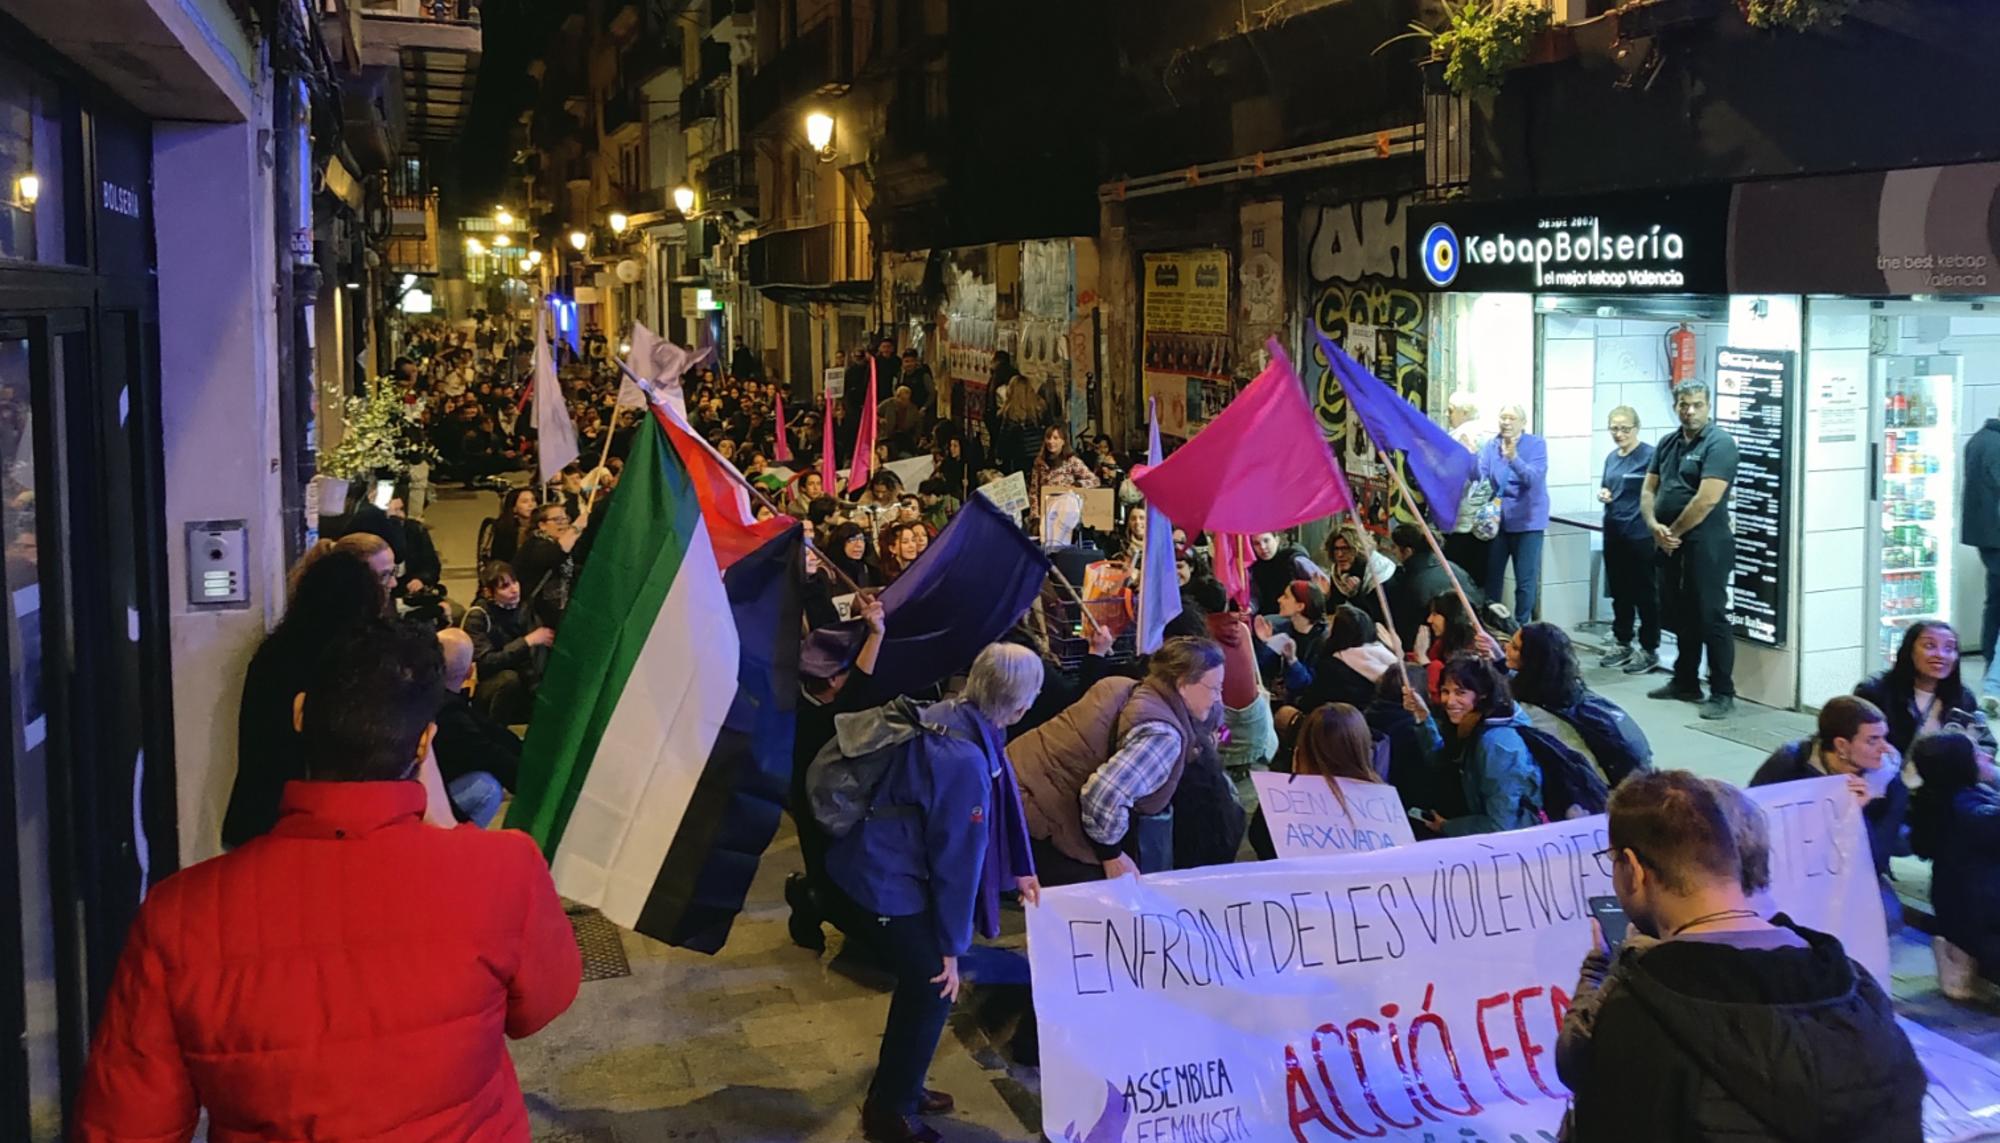 La Assemblea Feminista de València convocó una concentración en la noche del 24 de noviembre que recorrió el centro de la ciduad. - 3